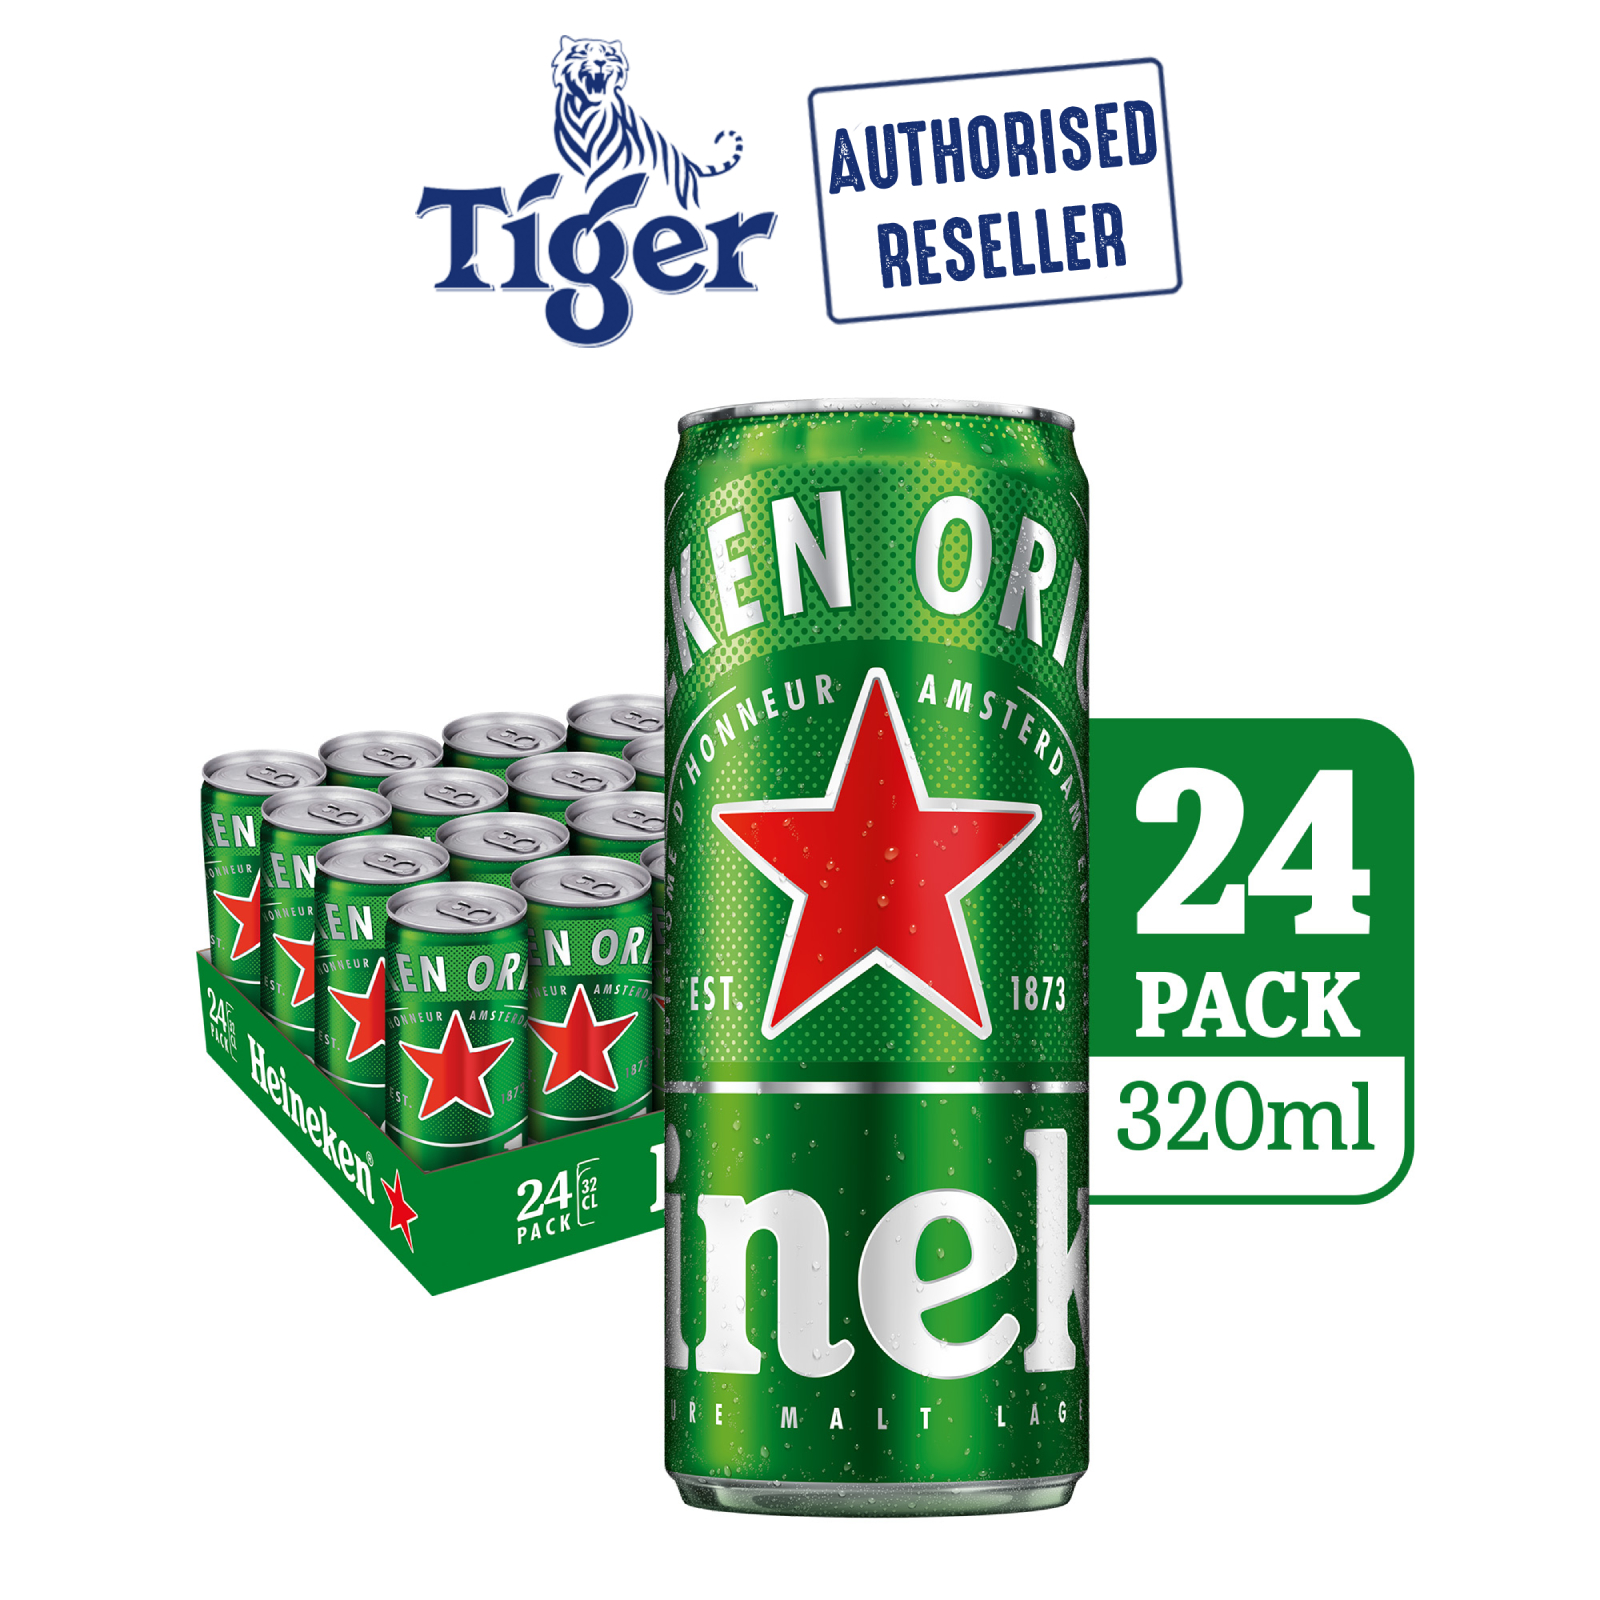 Buy Heineken Lager Beer 320ml X 24 Cans On Ezbuy Sg 2270